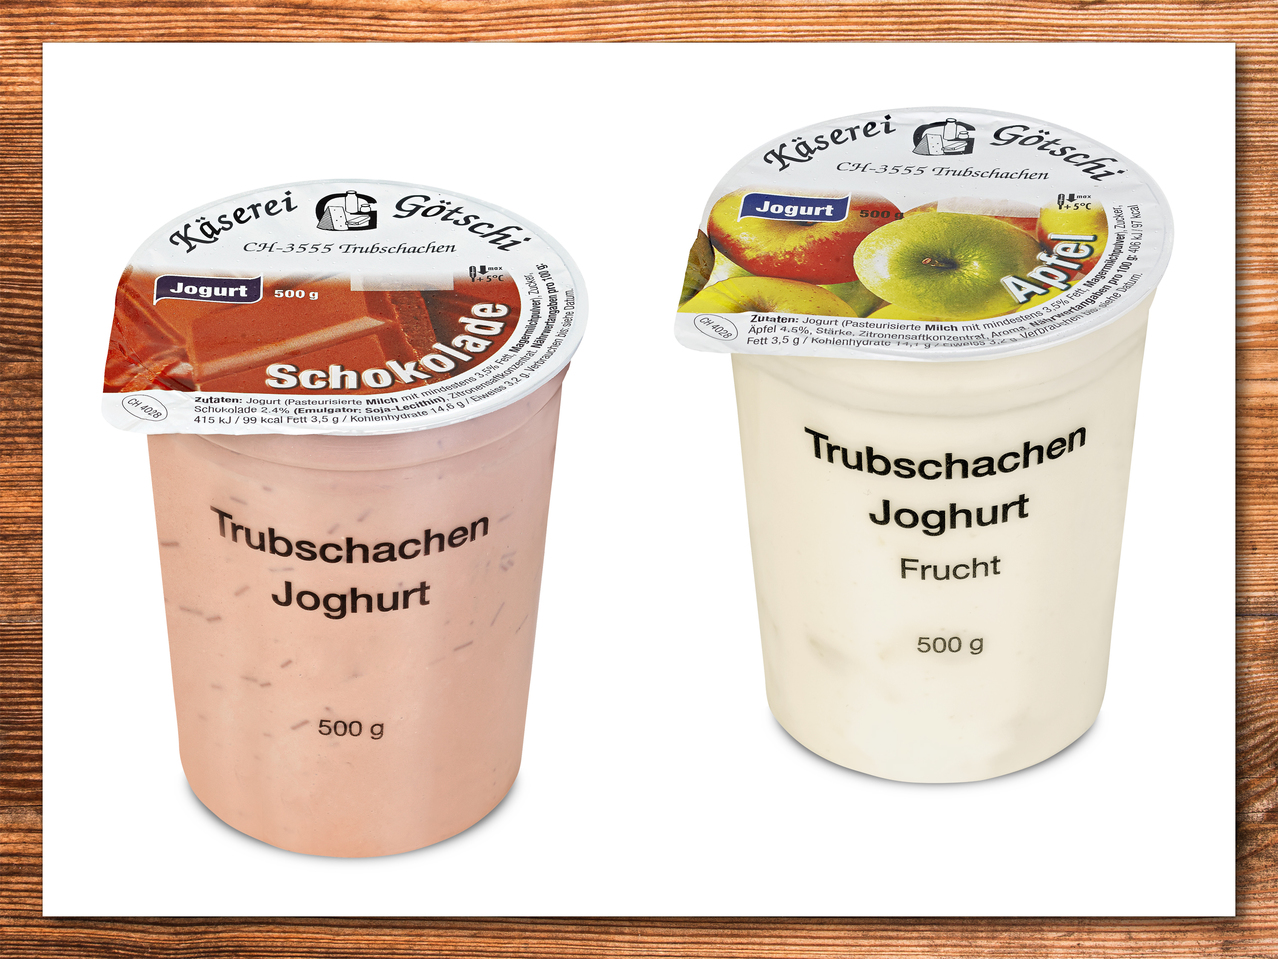 Trubschacher Joghurt